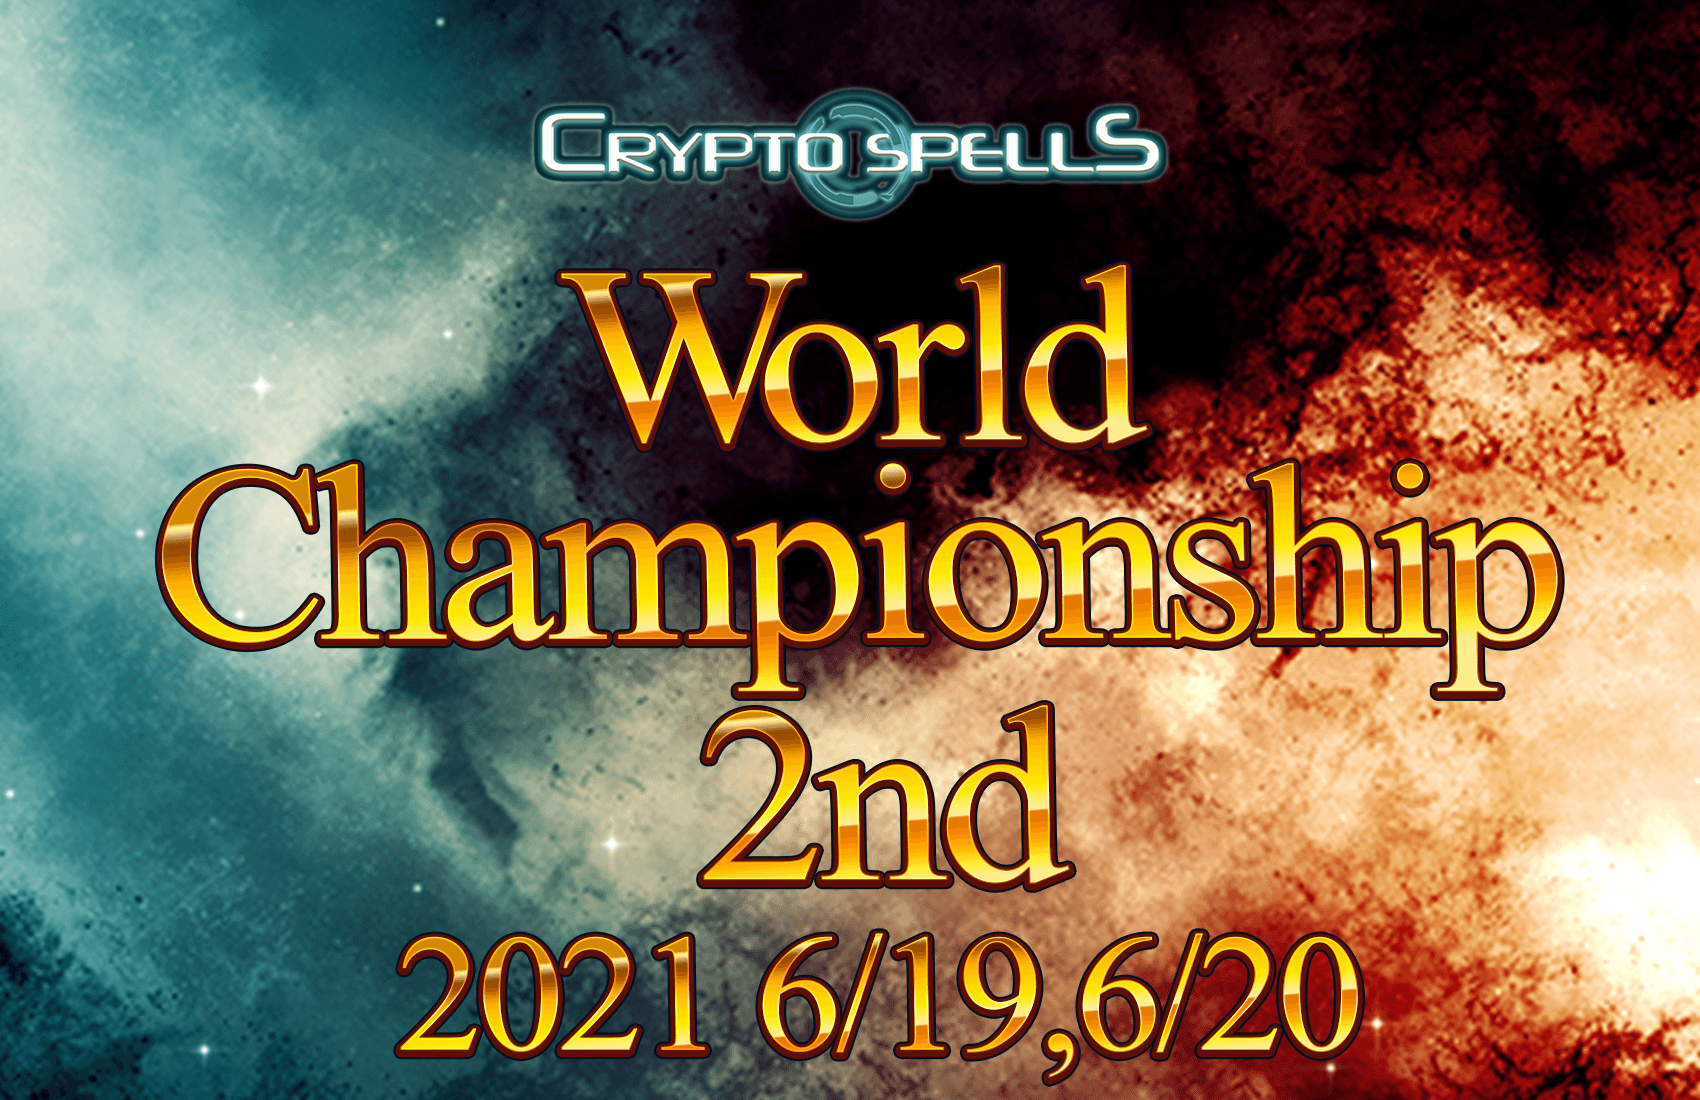 クリプトスペルズ、World Championship 2nd開催!!